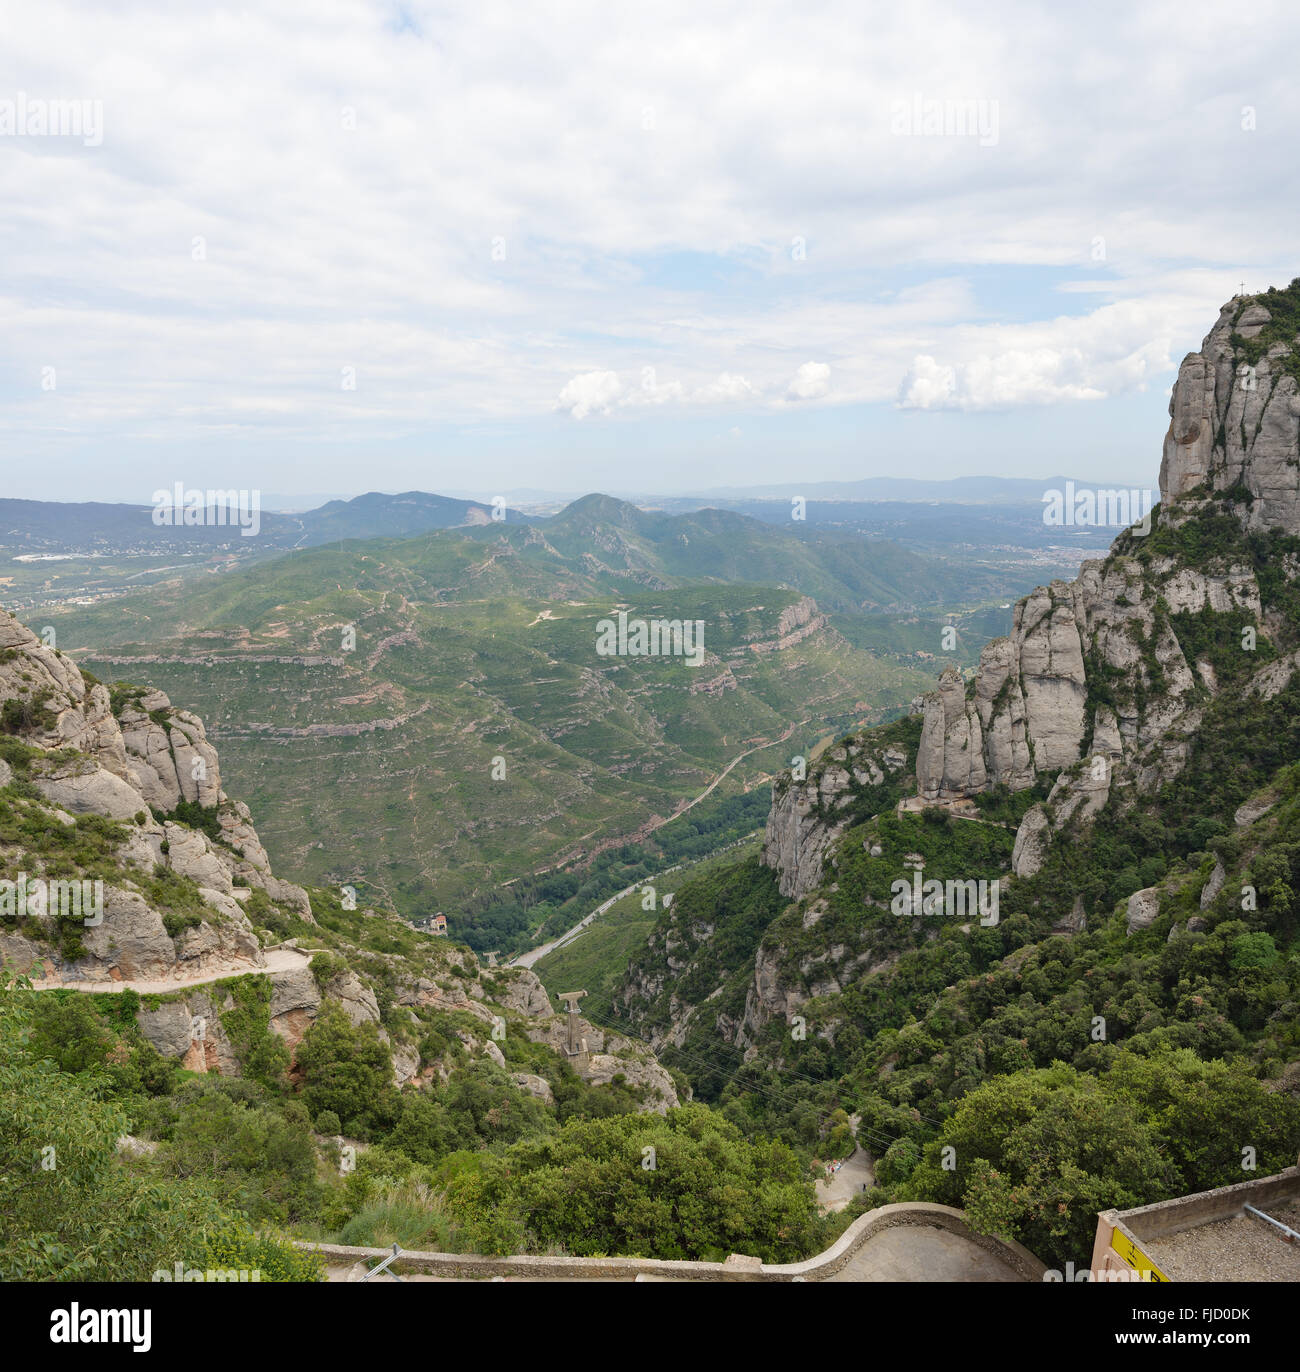 Angolo alto vista panoramica del Llobregat fiume valle dalla Abbazia di Montserrat verso Serra de Collcardus, Catalogna, Spagna. Foto Stock